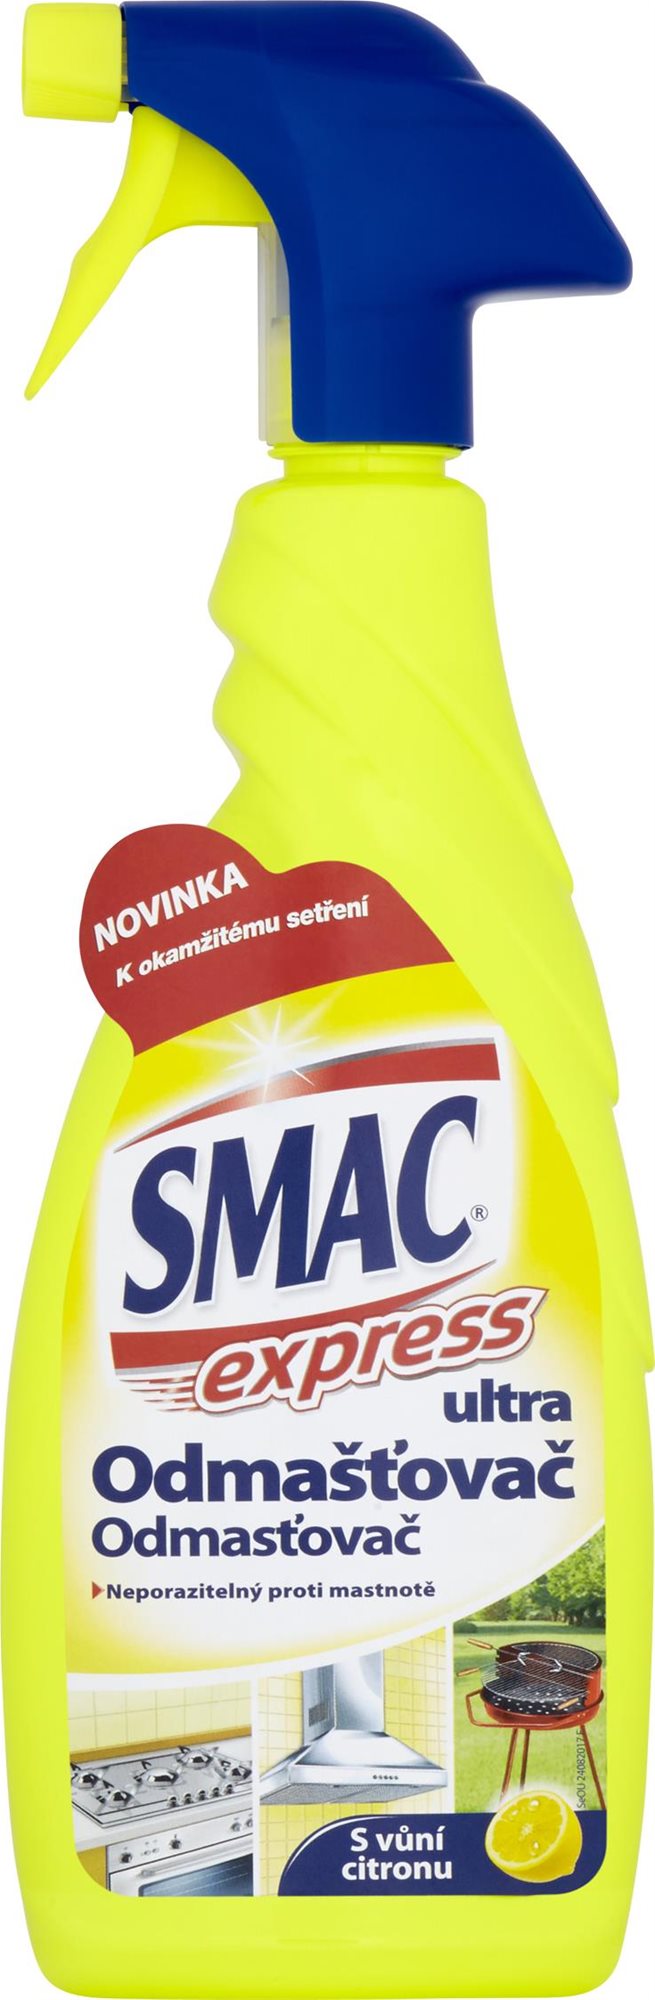 Konyhai zsíroldó SMAC Ultra zsírtalanító Lemon Express 650 ml